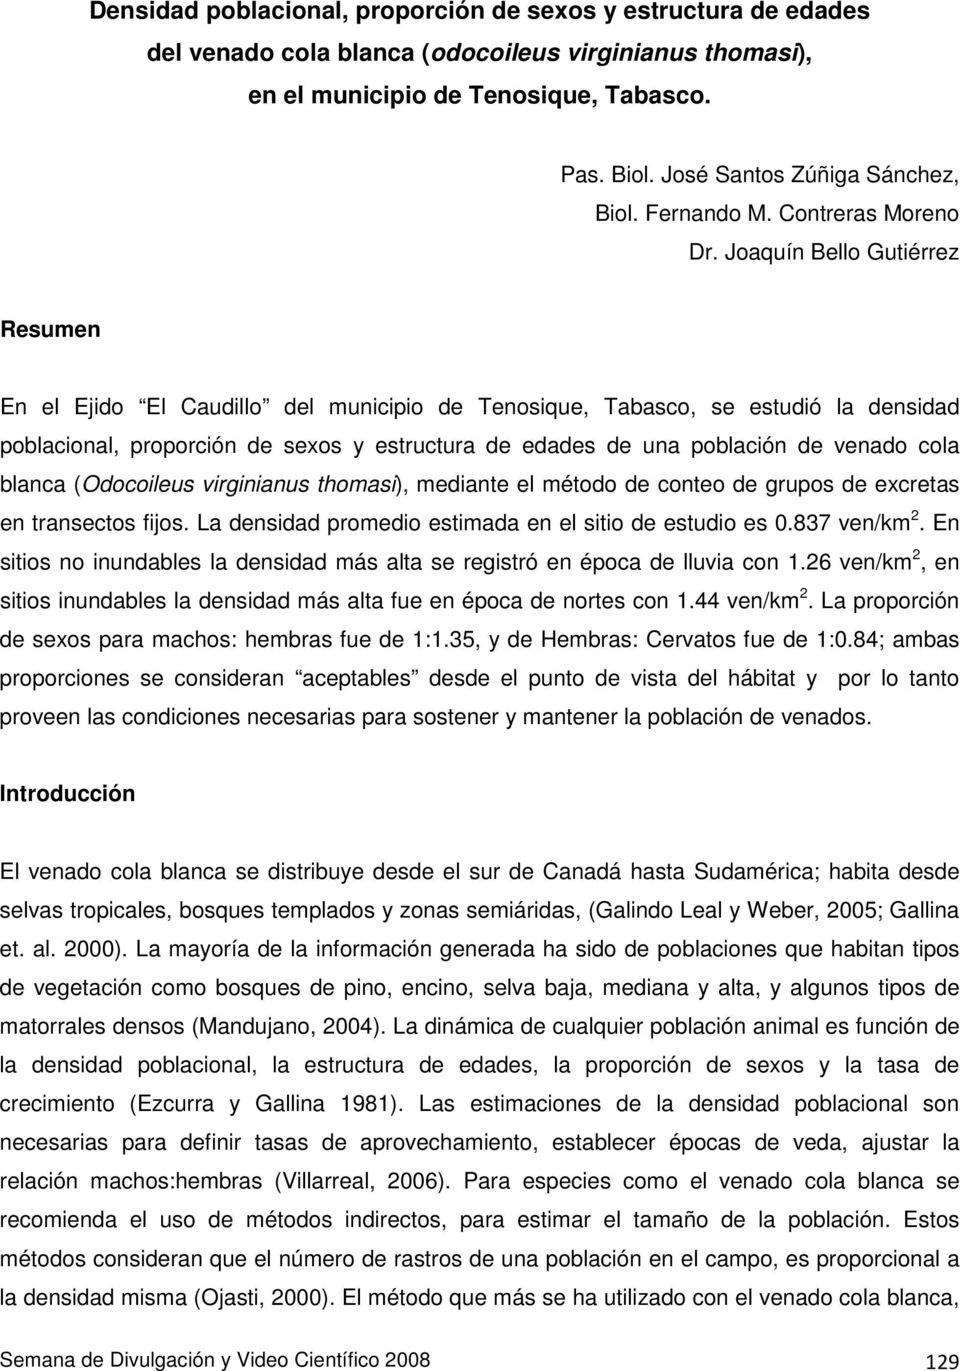 Joaquín Bello Gutiérrez Resumen En el Ejido El Caudillo del municipio de Tenosique, Tabasco, se estudió la densidad poblacional, proporción de sexos y estructura de edades de una población de venado